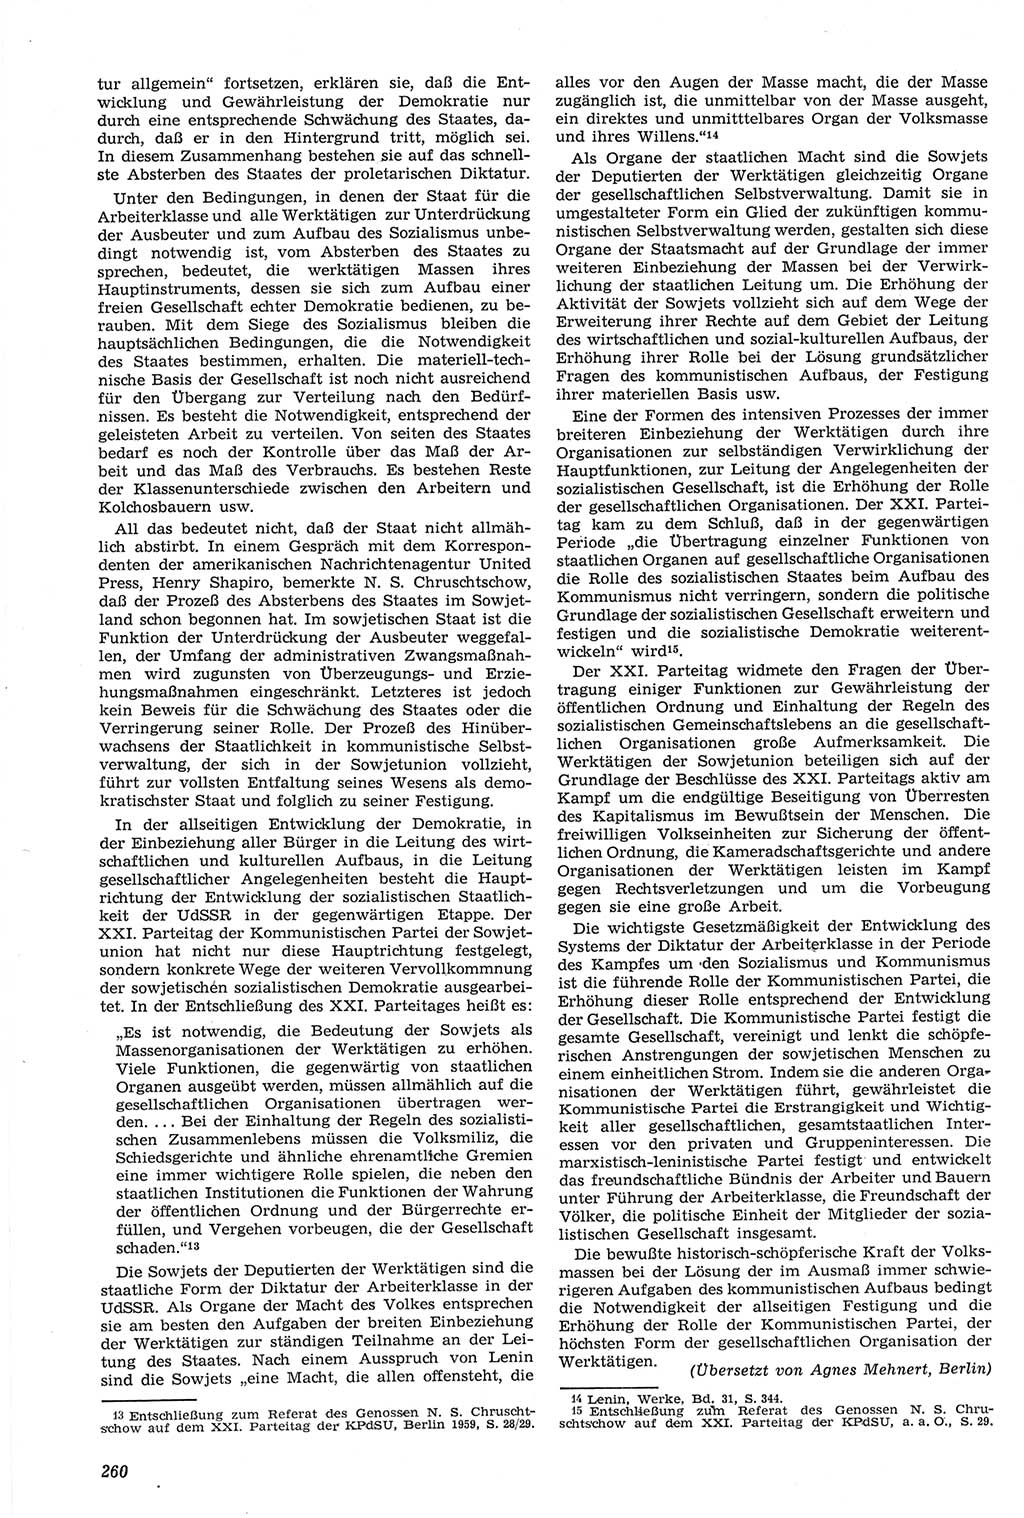 Neue Justiz (NJ), Zeitschrift für Recht und Rechtswissenschaft [Deutsche Demokratische Republik (DDR)], 14. Jahrgang 1960, Seite 260 (NJ DDR 1960, S. 260)